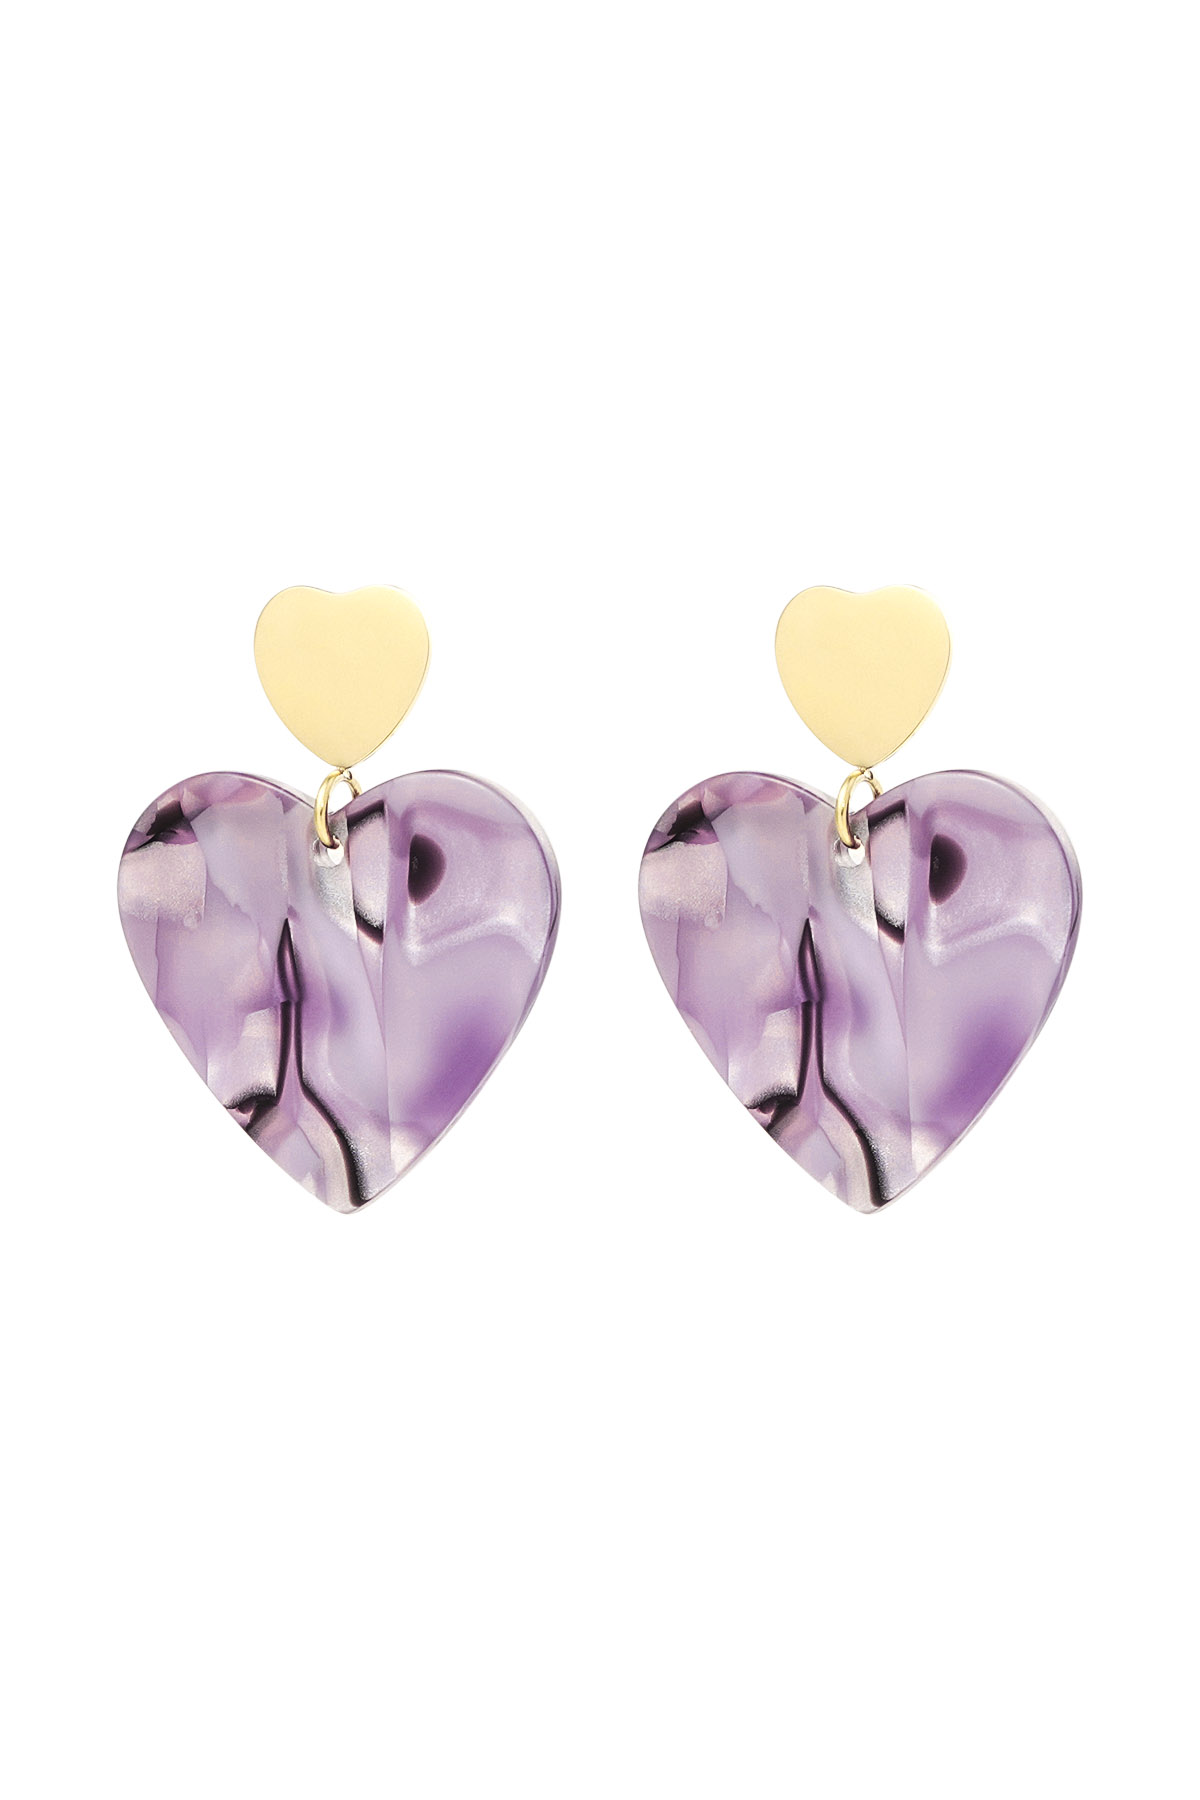 Double heart earrings - gold/purple h5 